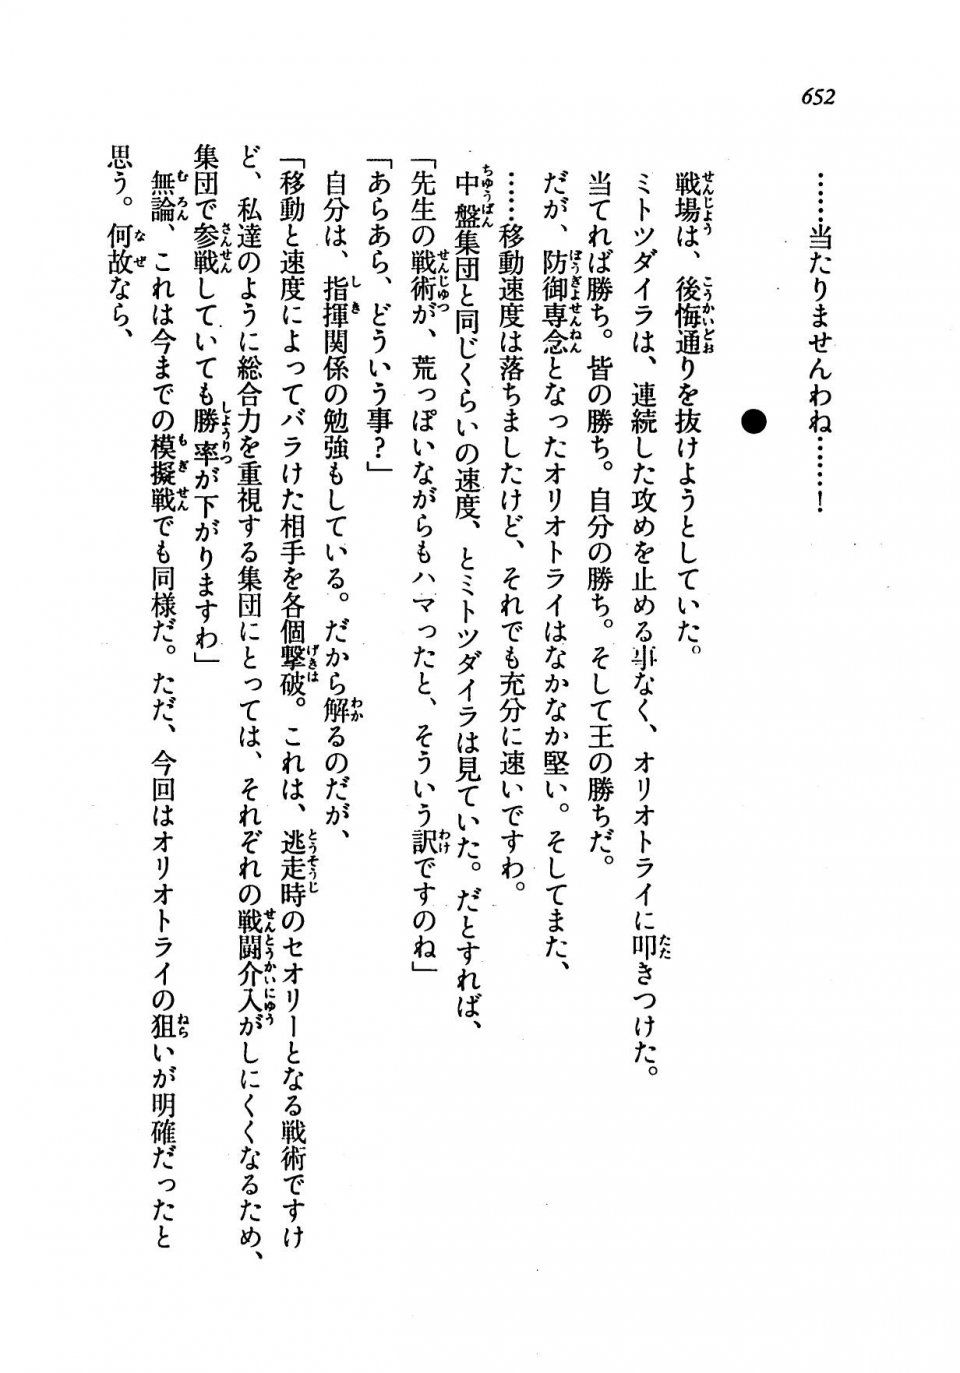 Kyoukai Senjou no Horizon LN Vol 19(8A) - Photo #652